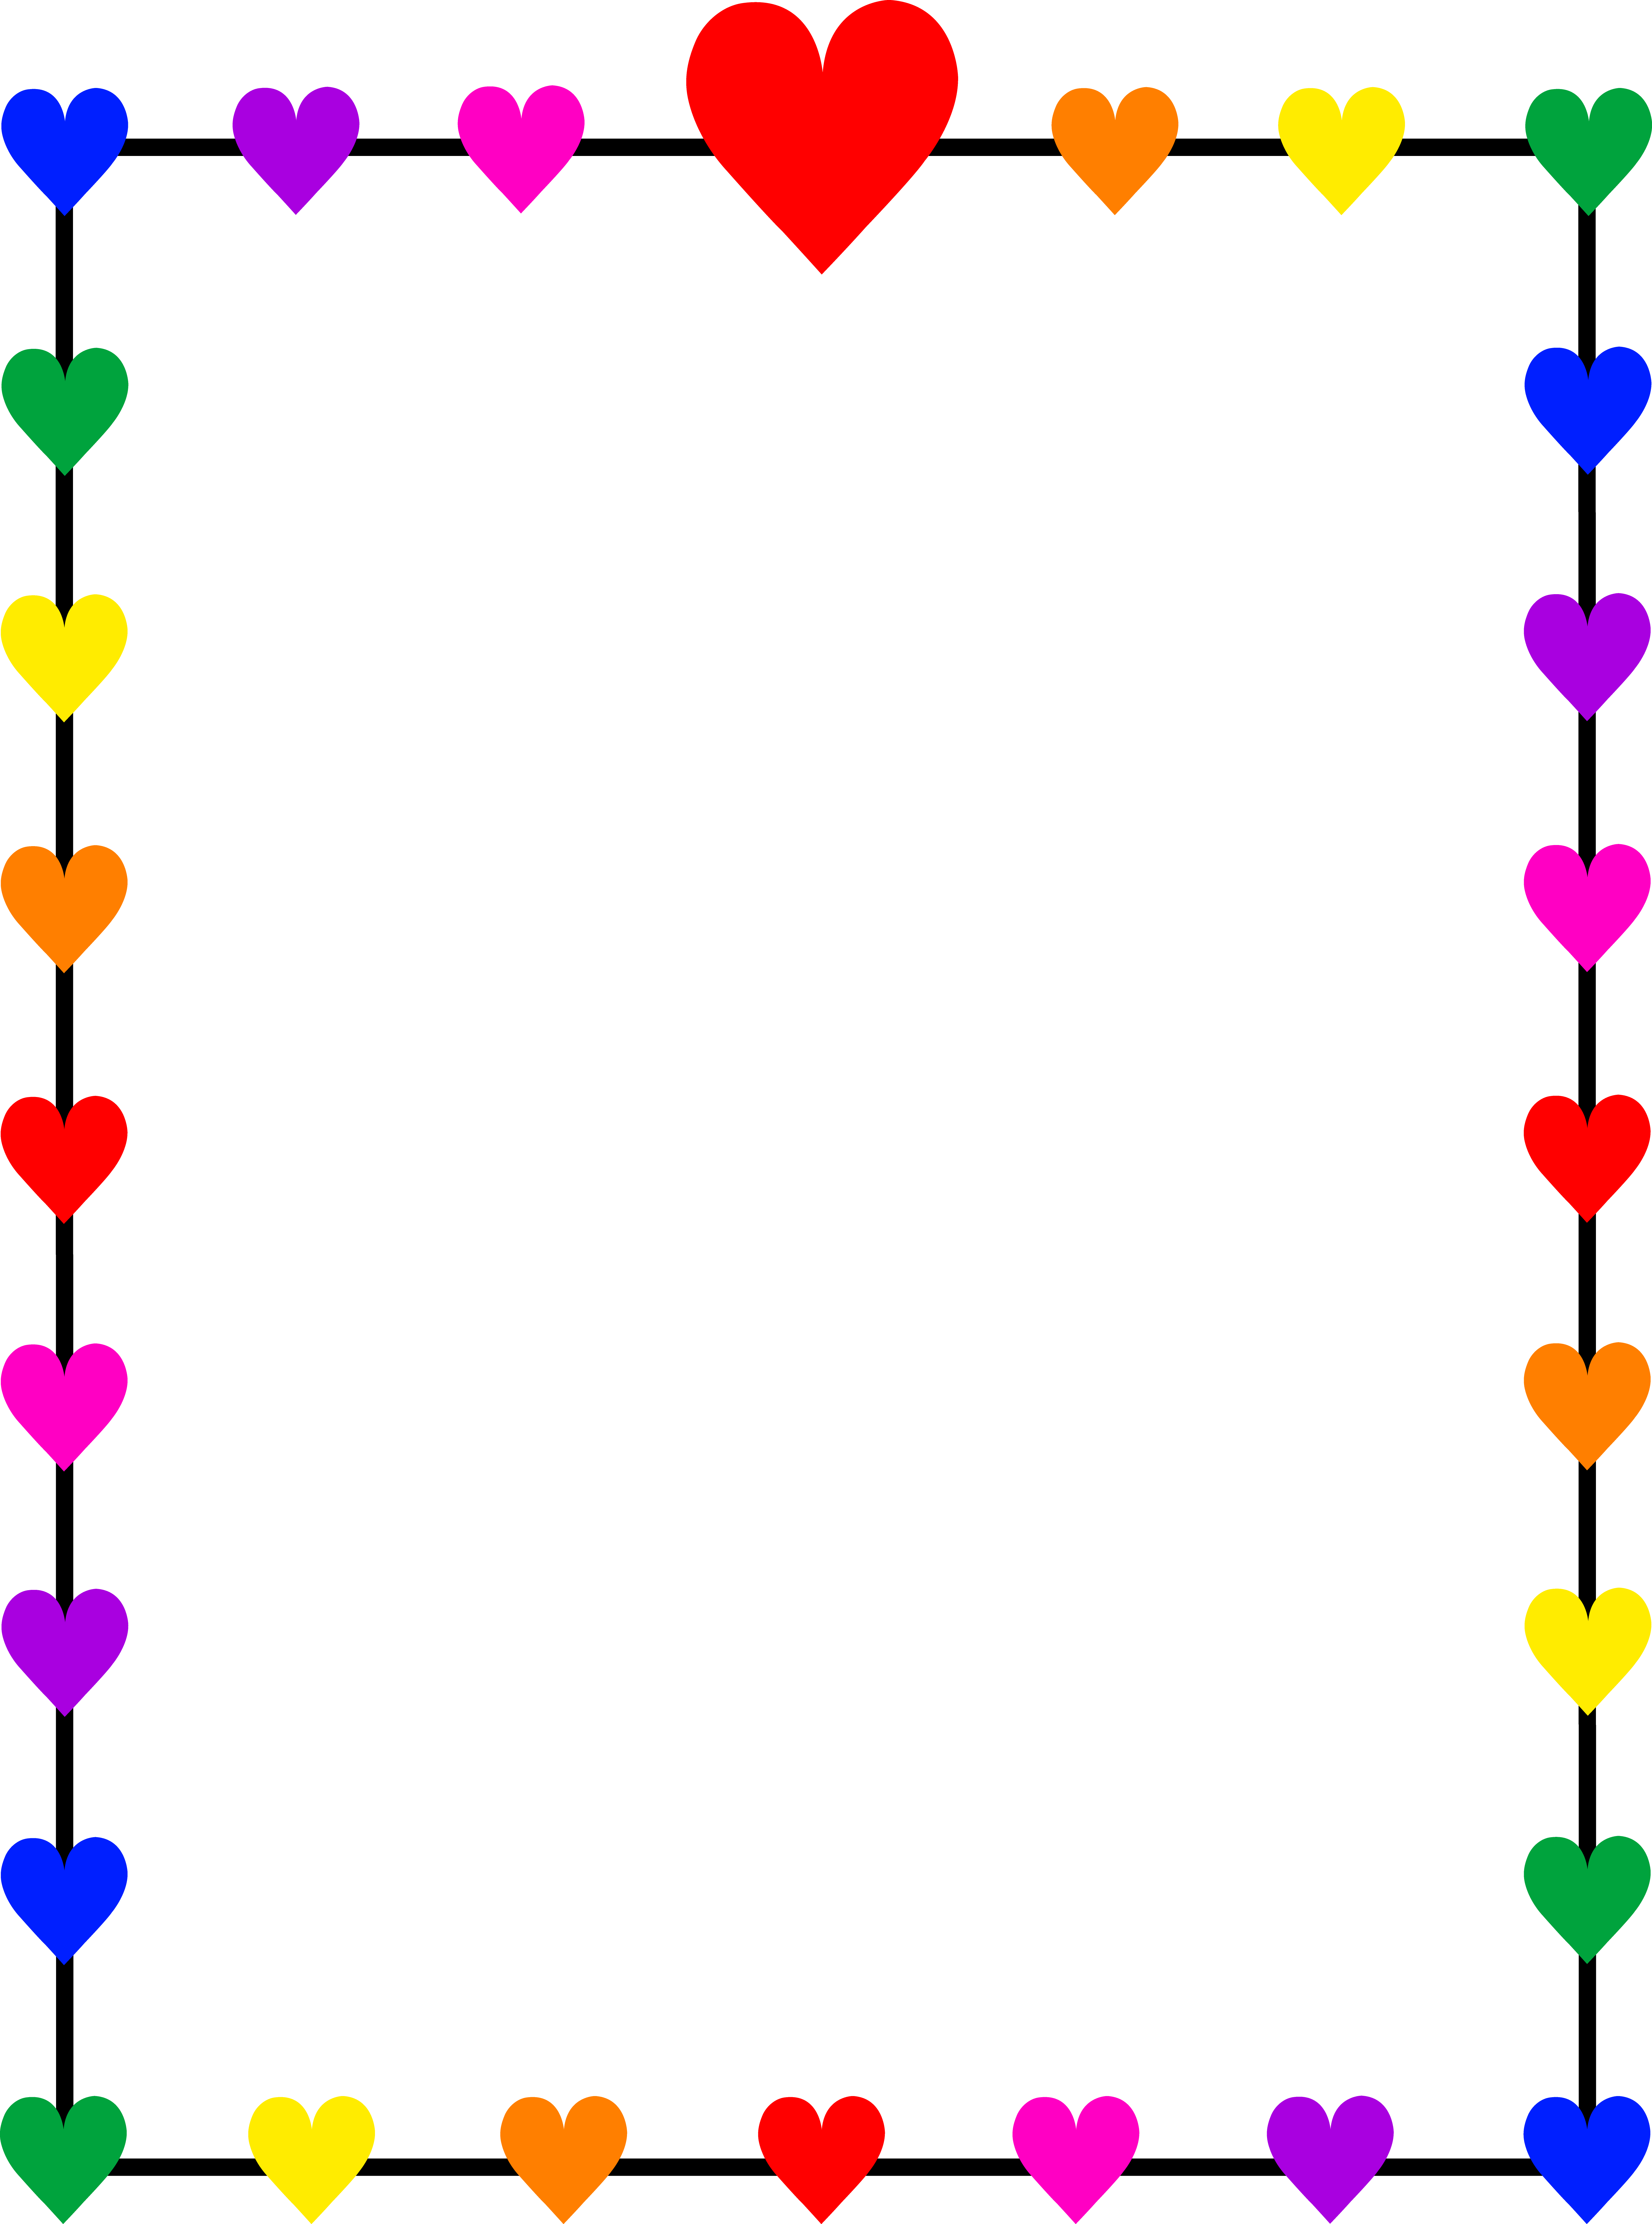 Rainbow Hearts Border Frame - Free Clip Art